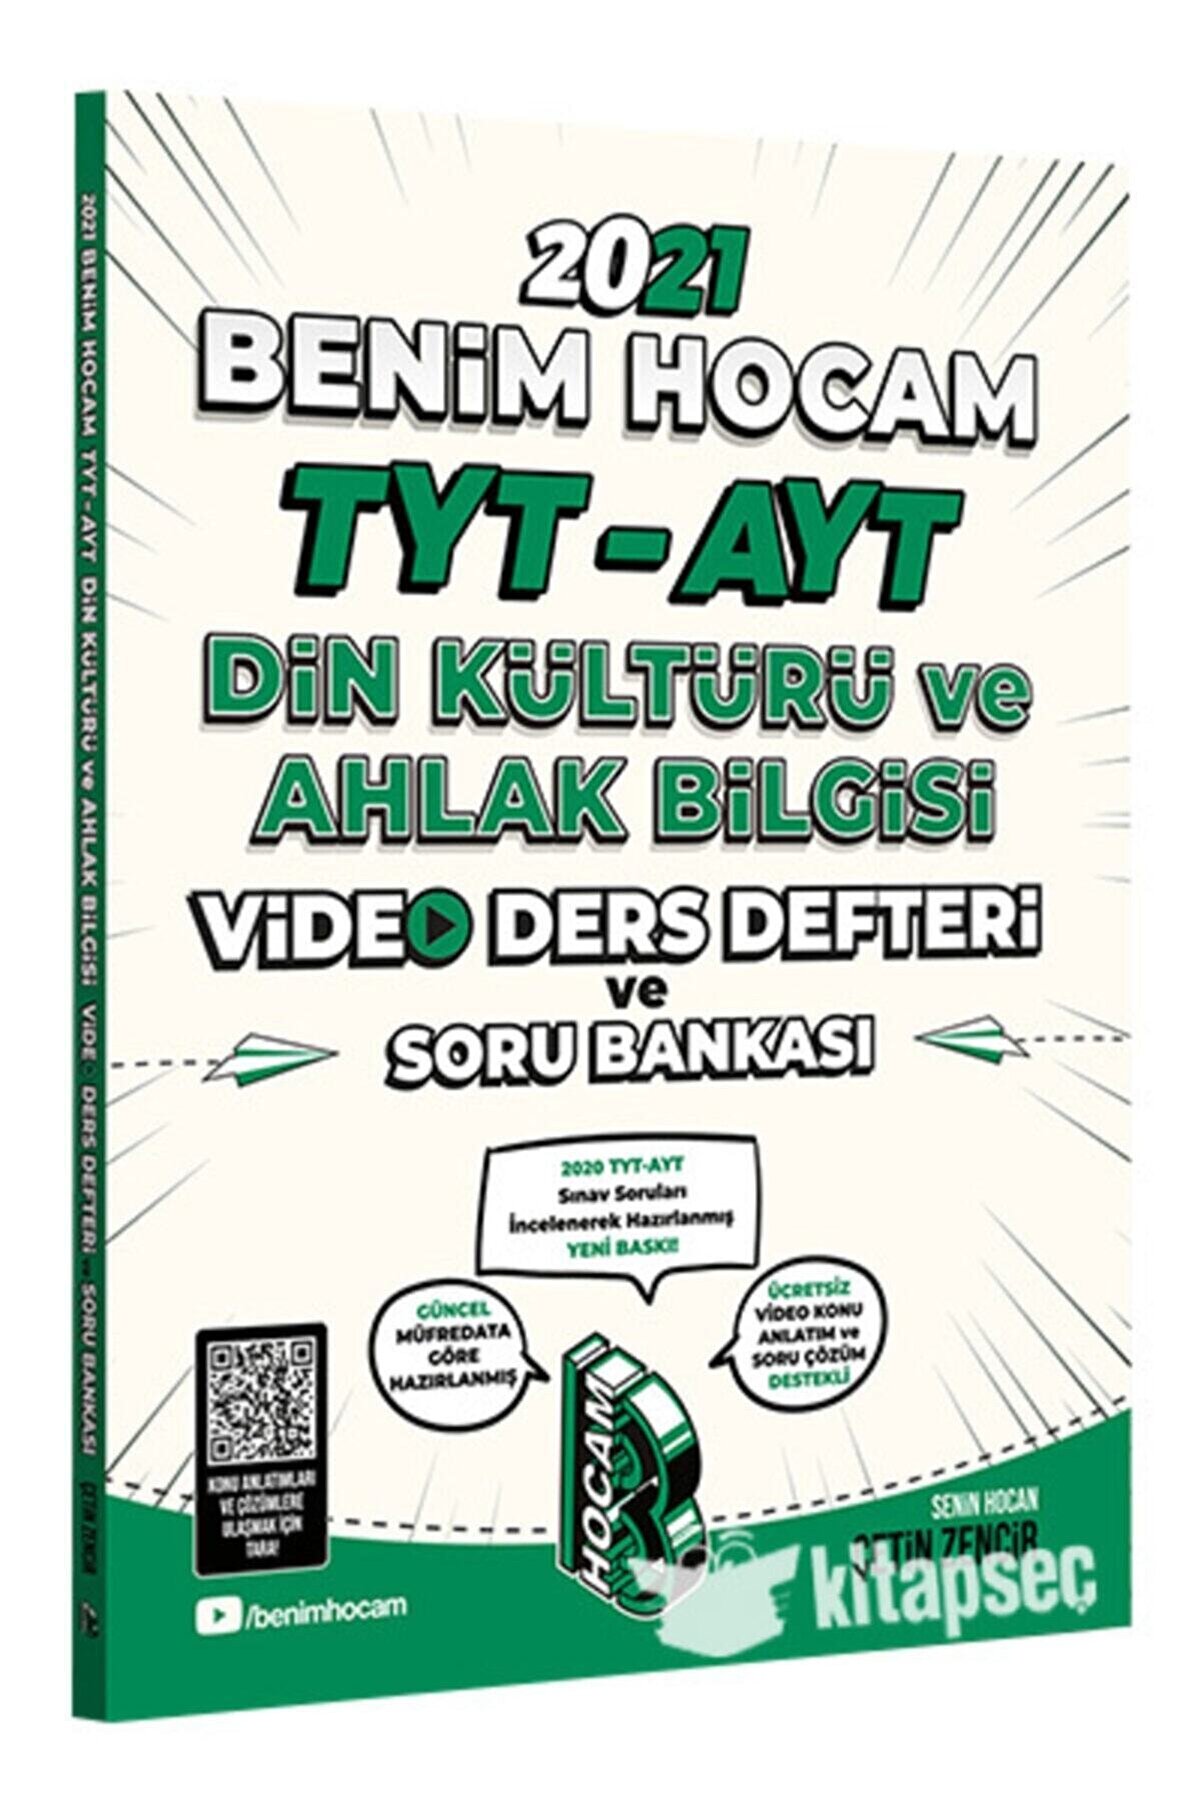 Benim Hocam Yayınları Tyt Ayt Din Kültürü ve Ahlak Bilgisi Video Ders Notları ve Soru Bankası